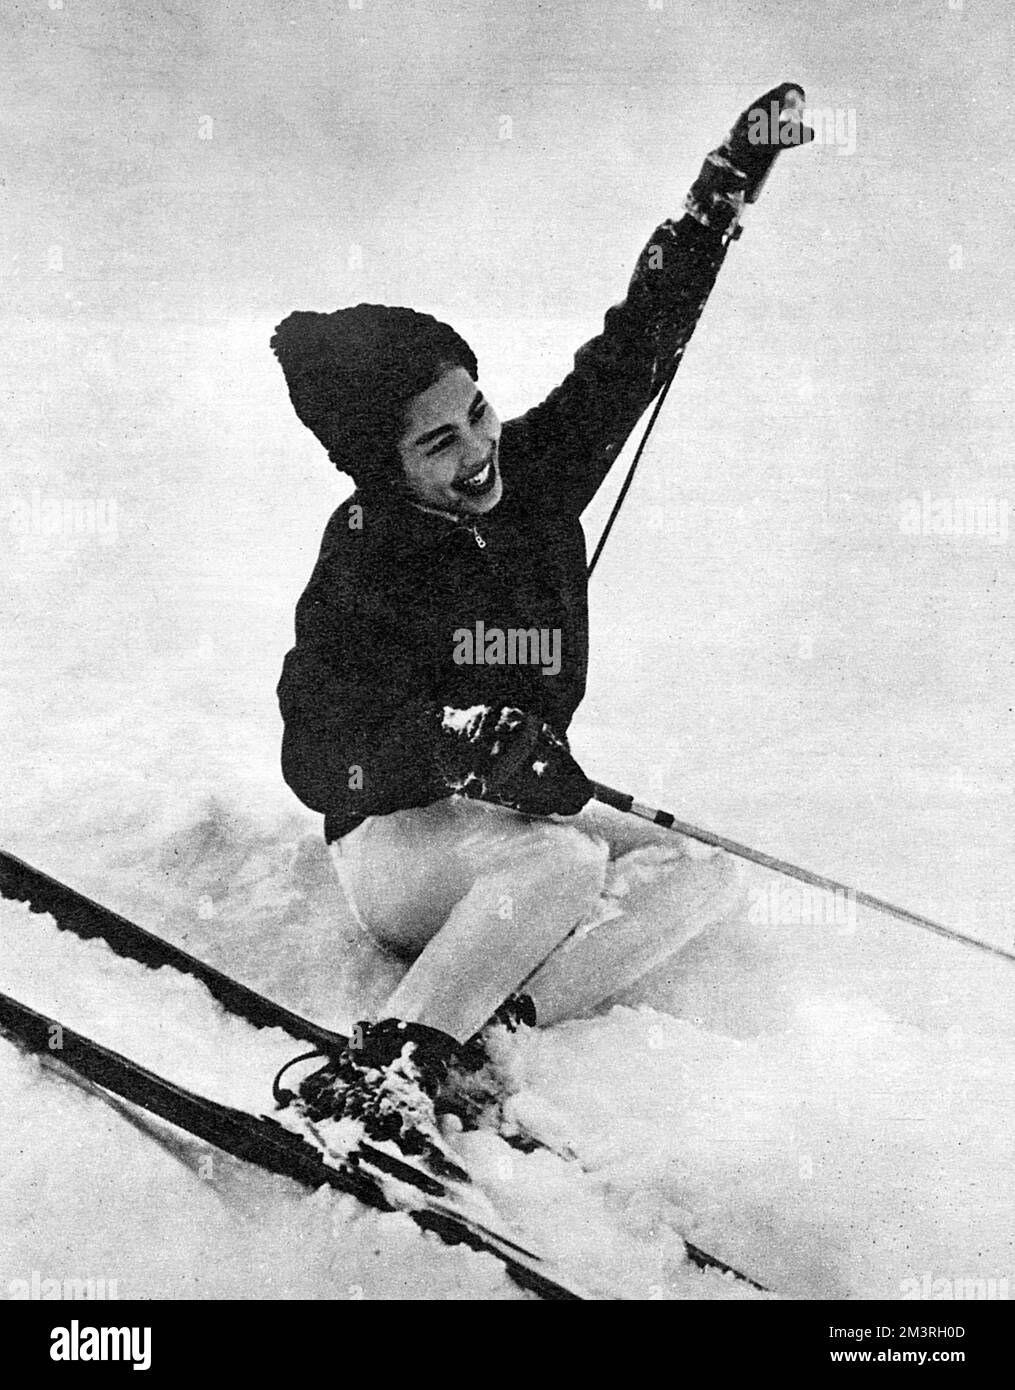 La regina Sirikit (1932-) della Thailandia cade a molto hilarity, provando un posto di sci alla stazione svizzera di sport invernali di Gstaad, mentre in vacanza con il suo marito re Bhumibol Adulyadej (Rama IX) (1927-) ed i loro bambini. Data: 1961 Foto Stock